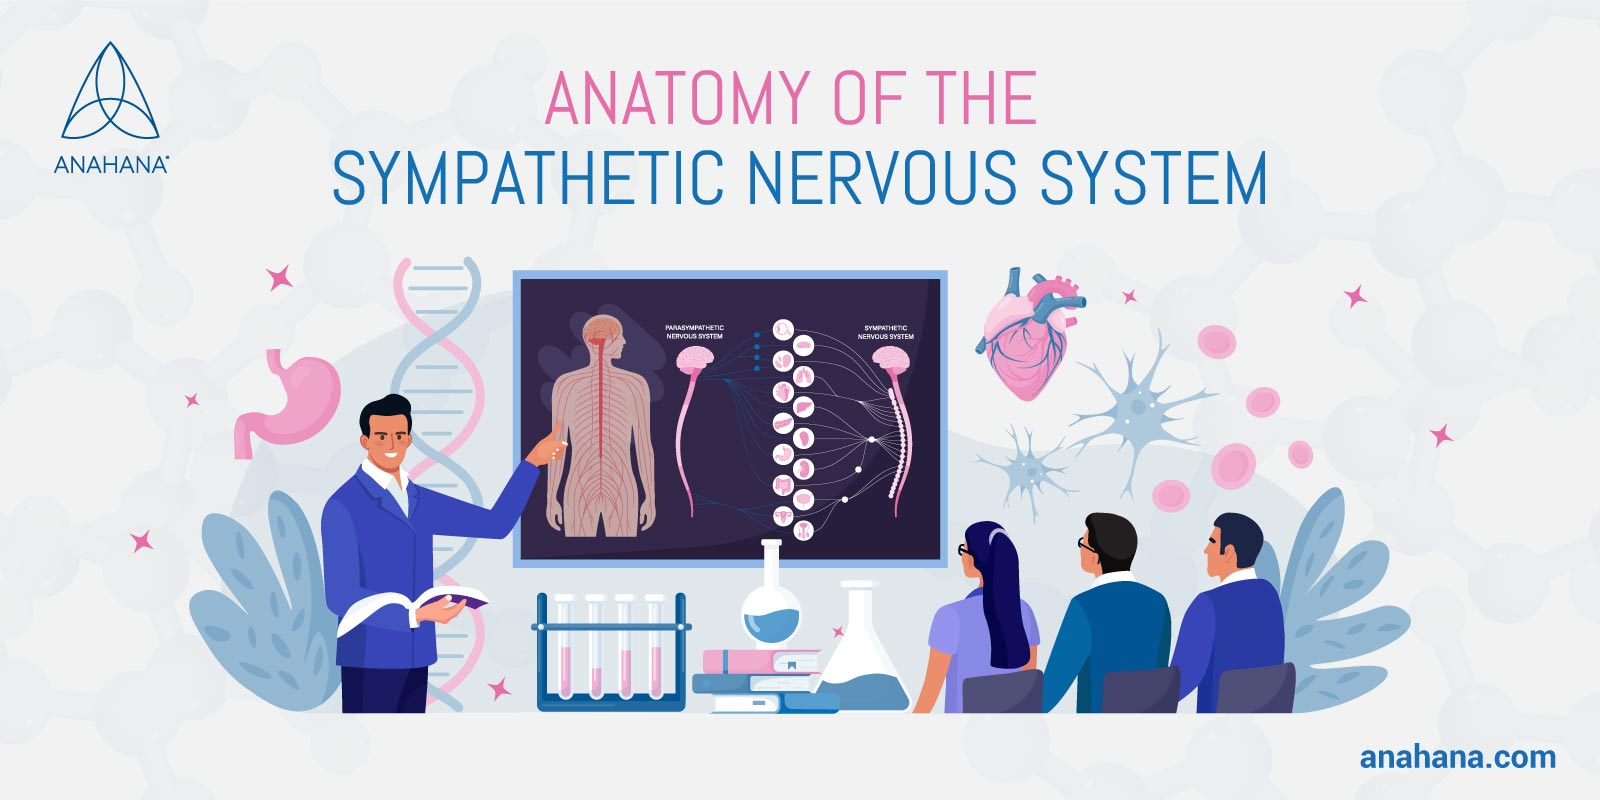 Anatomía del sistema nervioso simpático